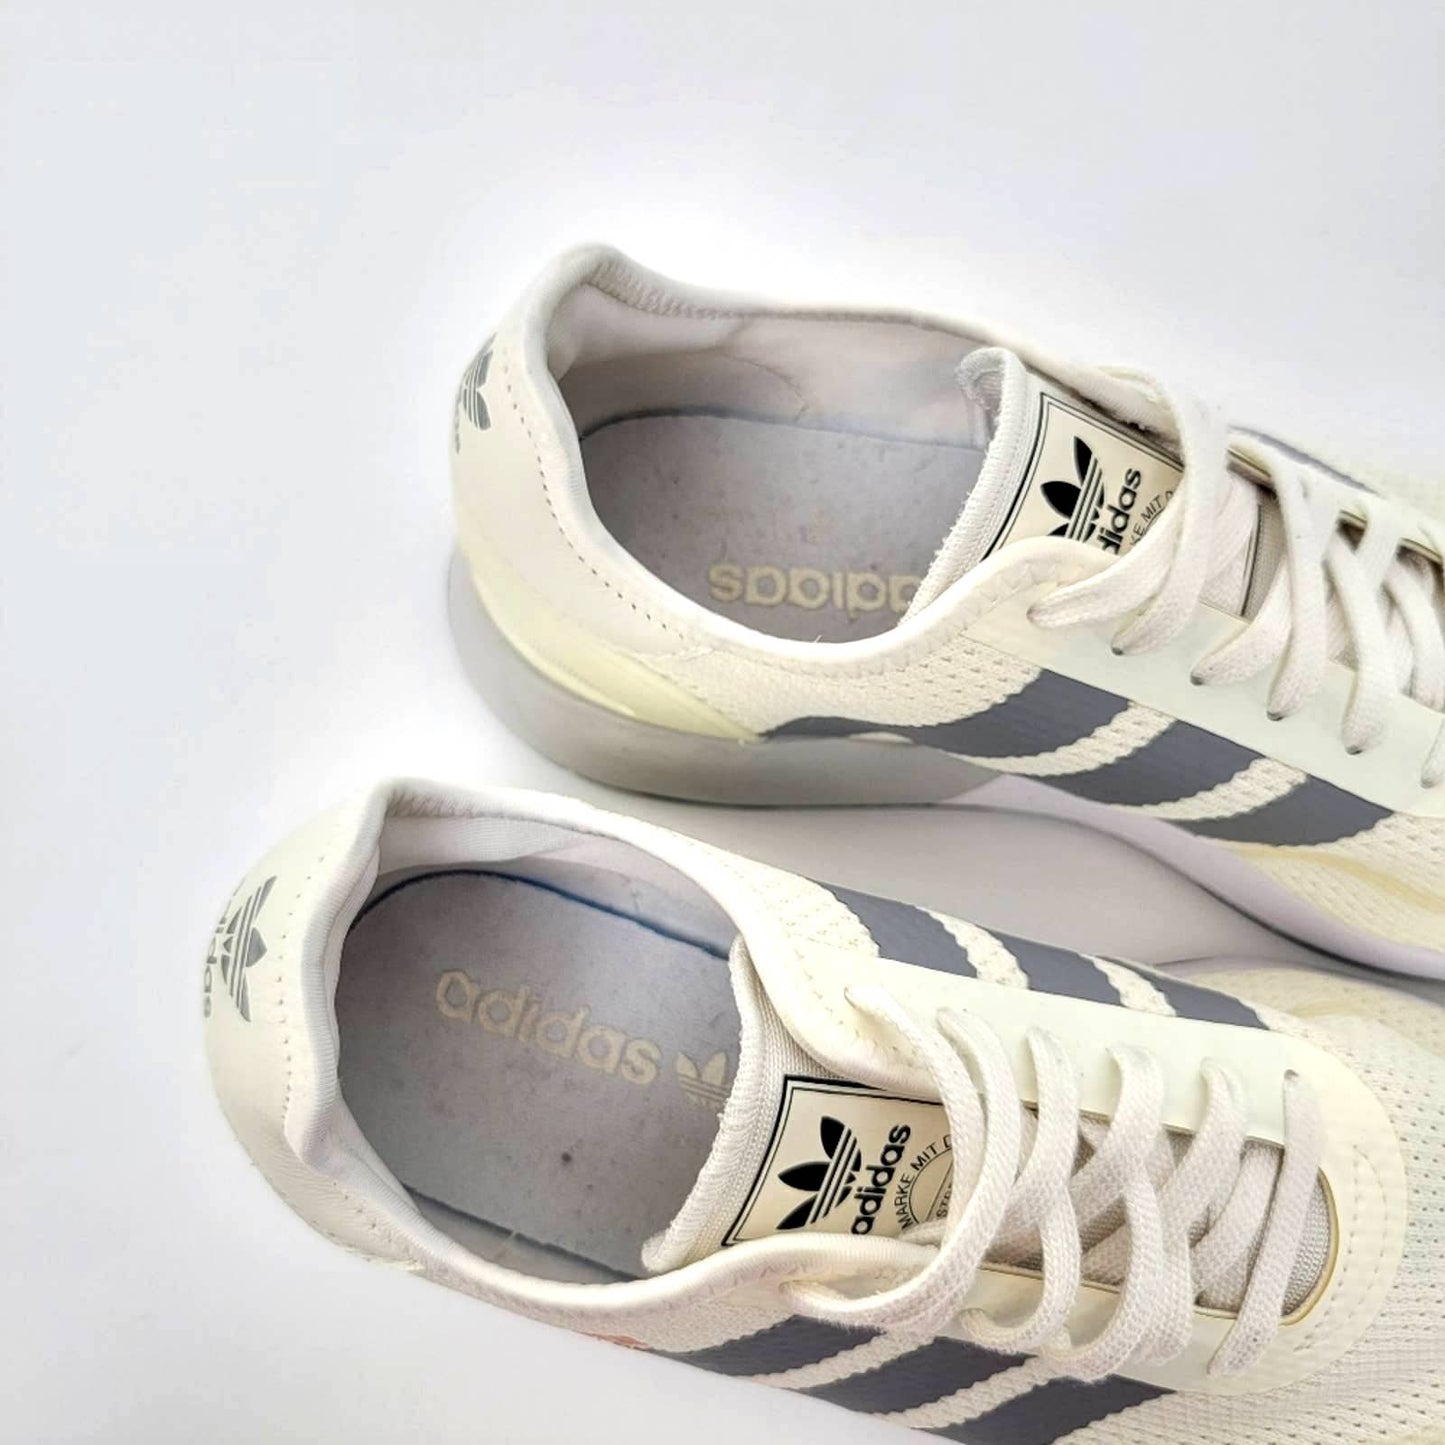 adidas N-5923 'Grey Three' Running Sneakers - 9/10